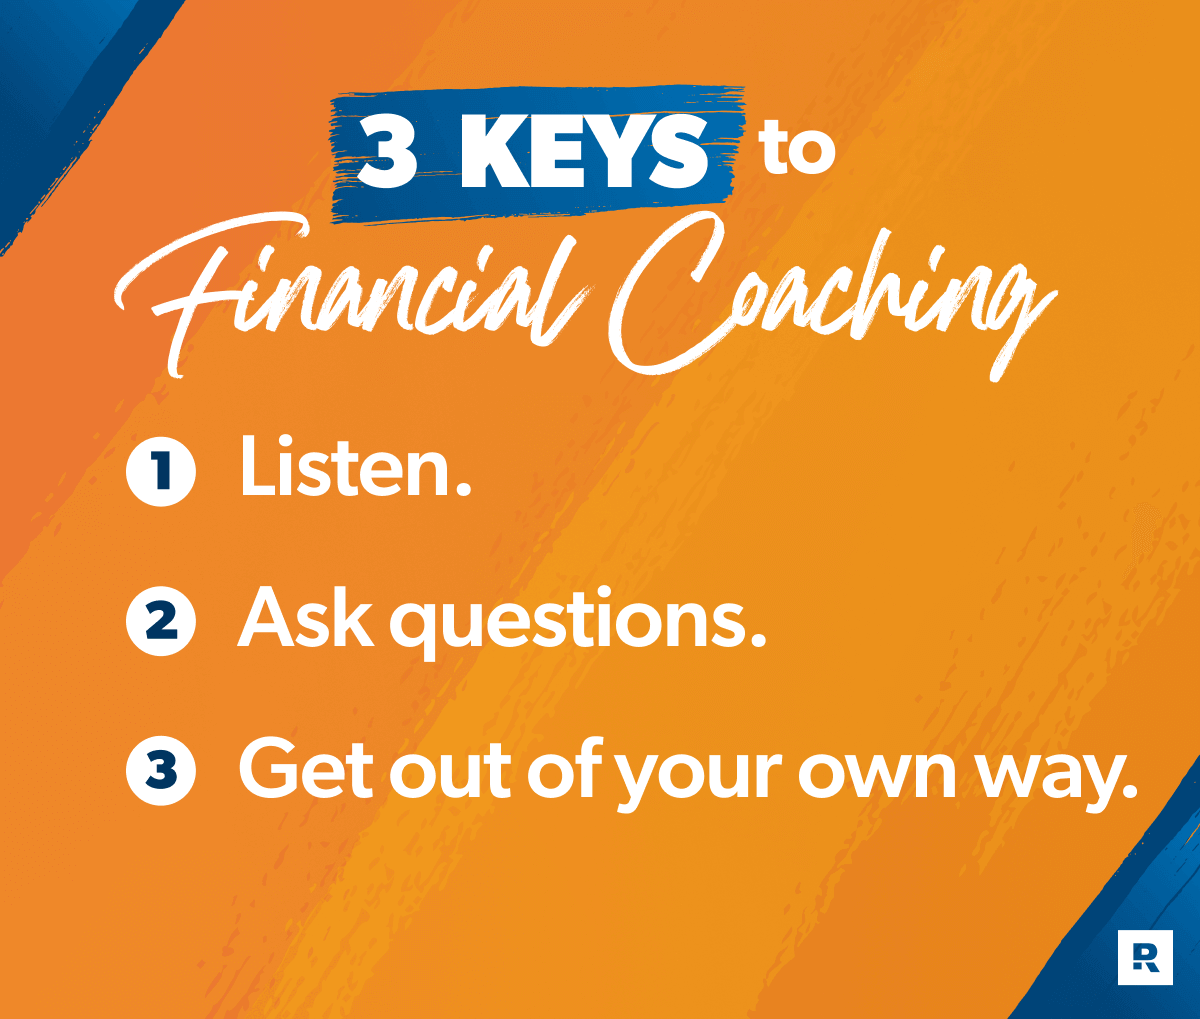 3 keys to financial coaching